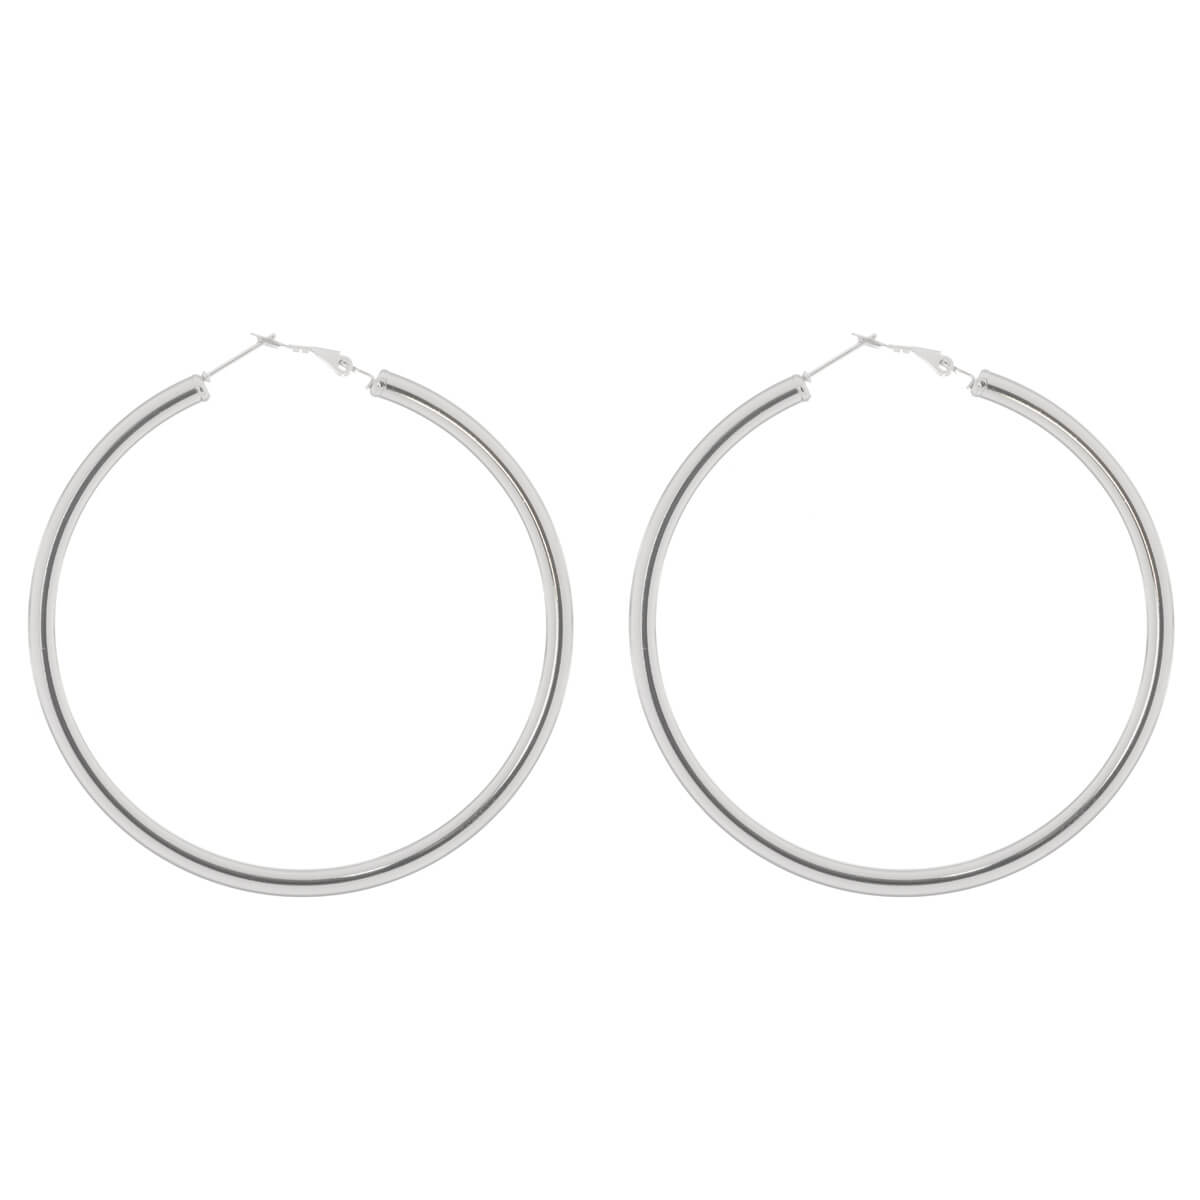 Steel earrings 7cm 4mm